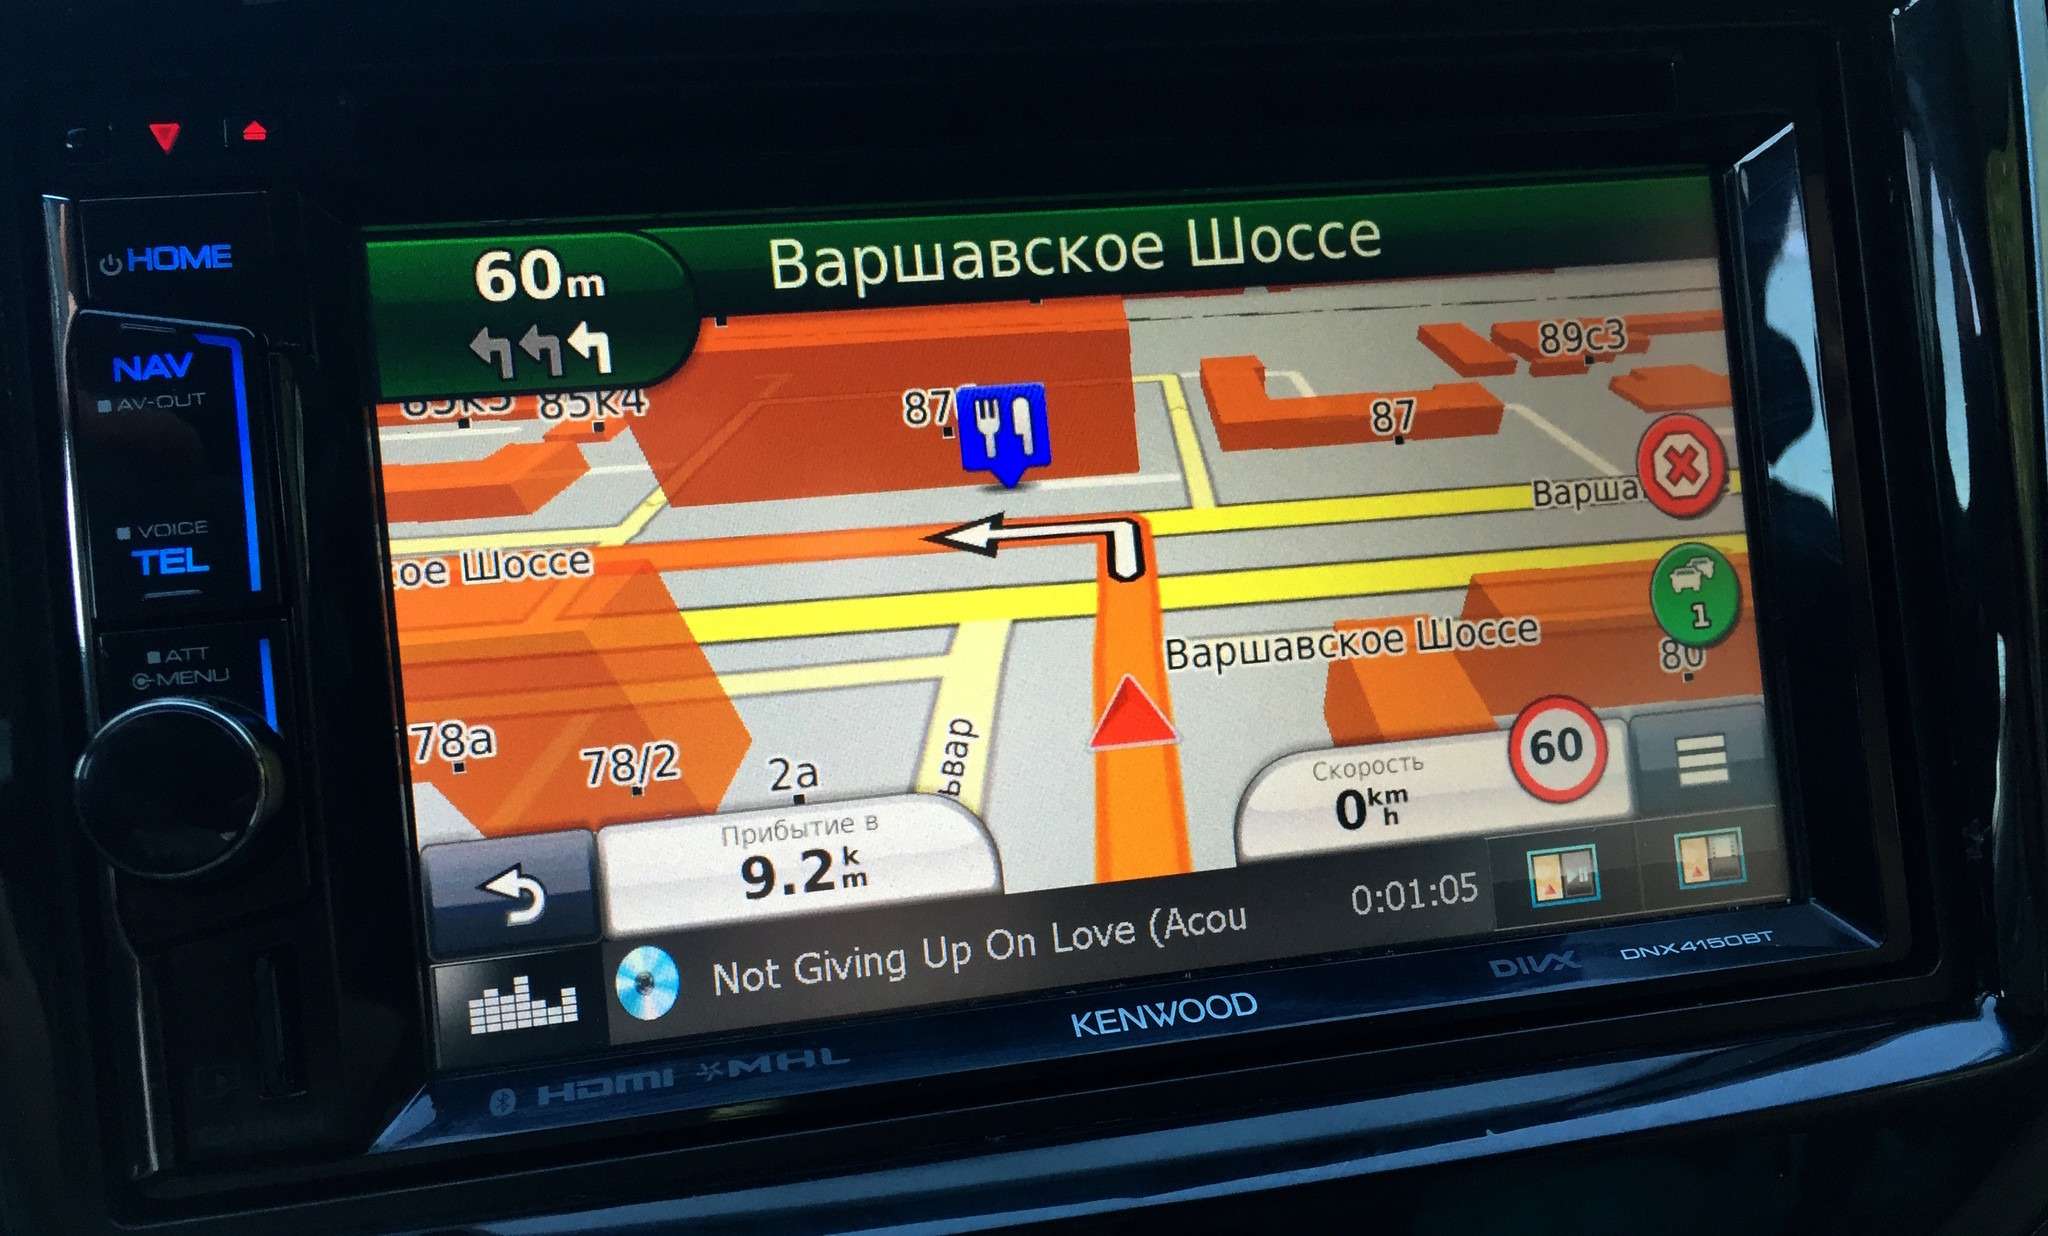 Справа во время навигации отображается загруженность дорог в городе по балльной системе «Яндекса»